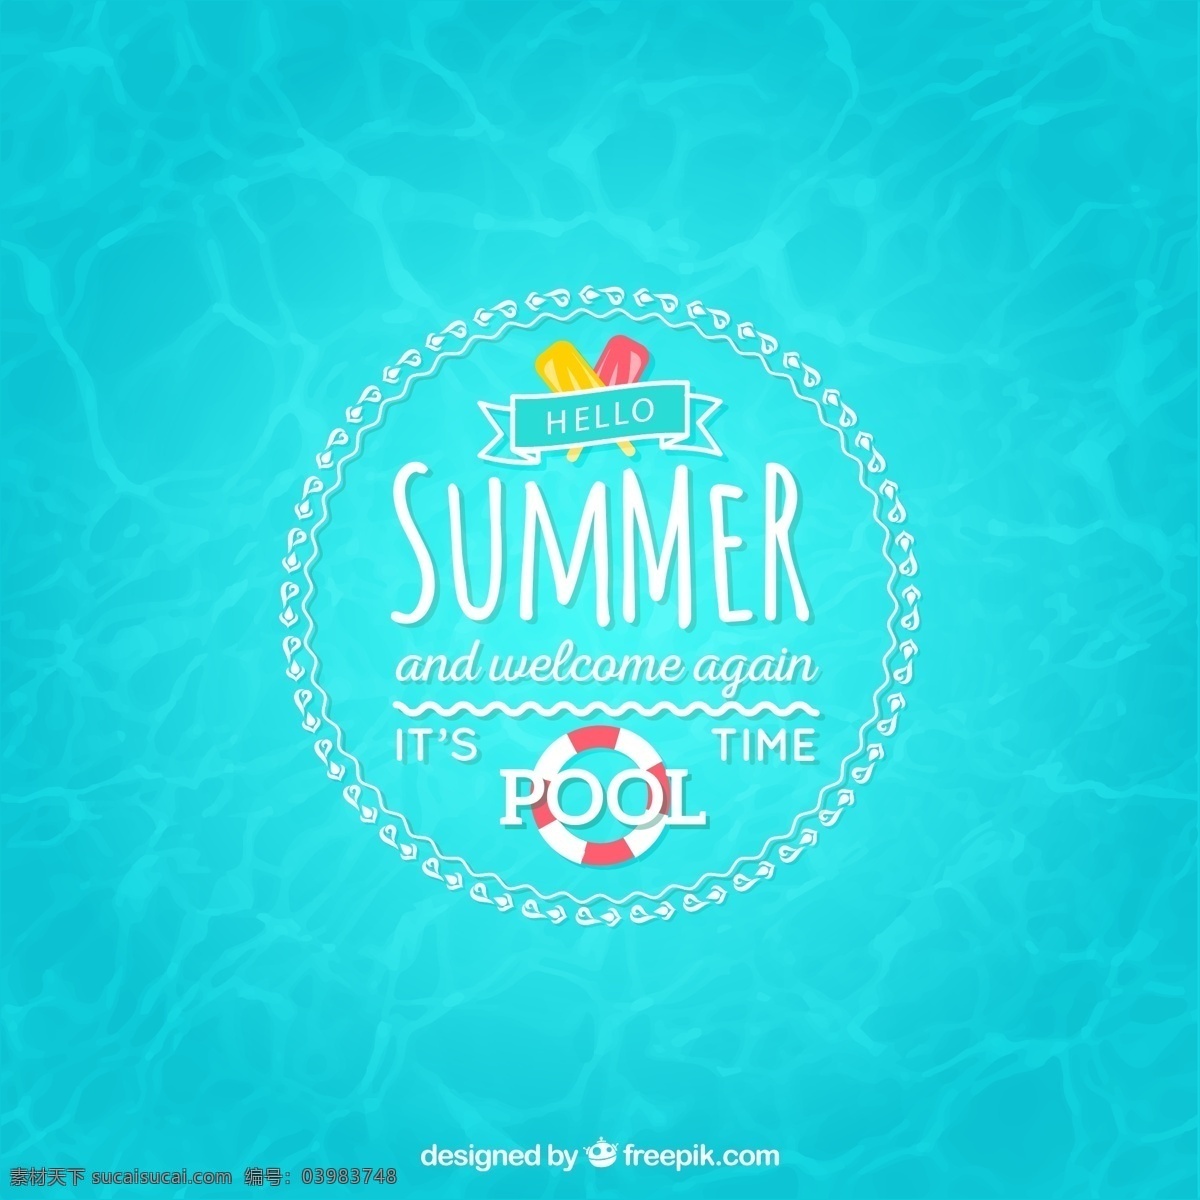 创意 夏季 游泳池 海报 救生圈 游泳圈 summer 冰棒 雪糕 夏季海报 矢量 青色 天蓝色